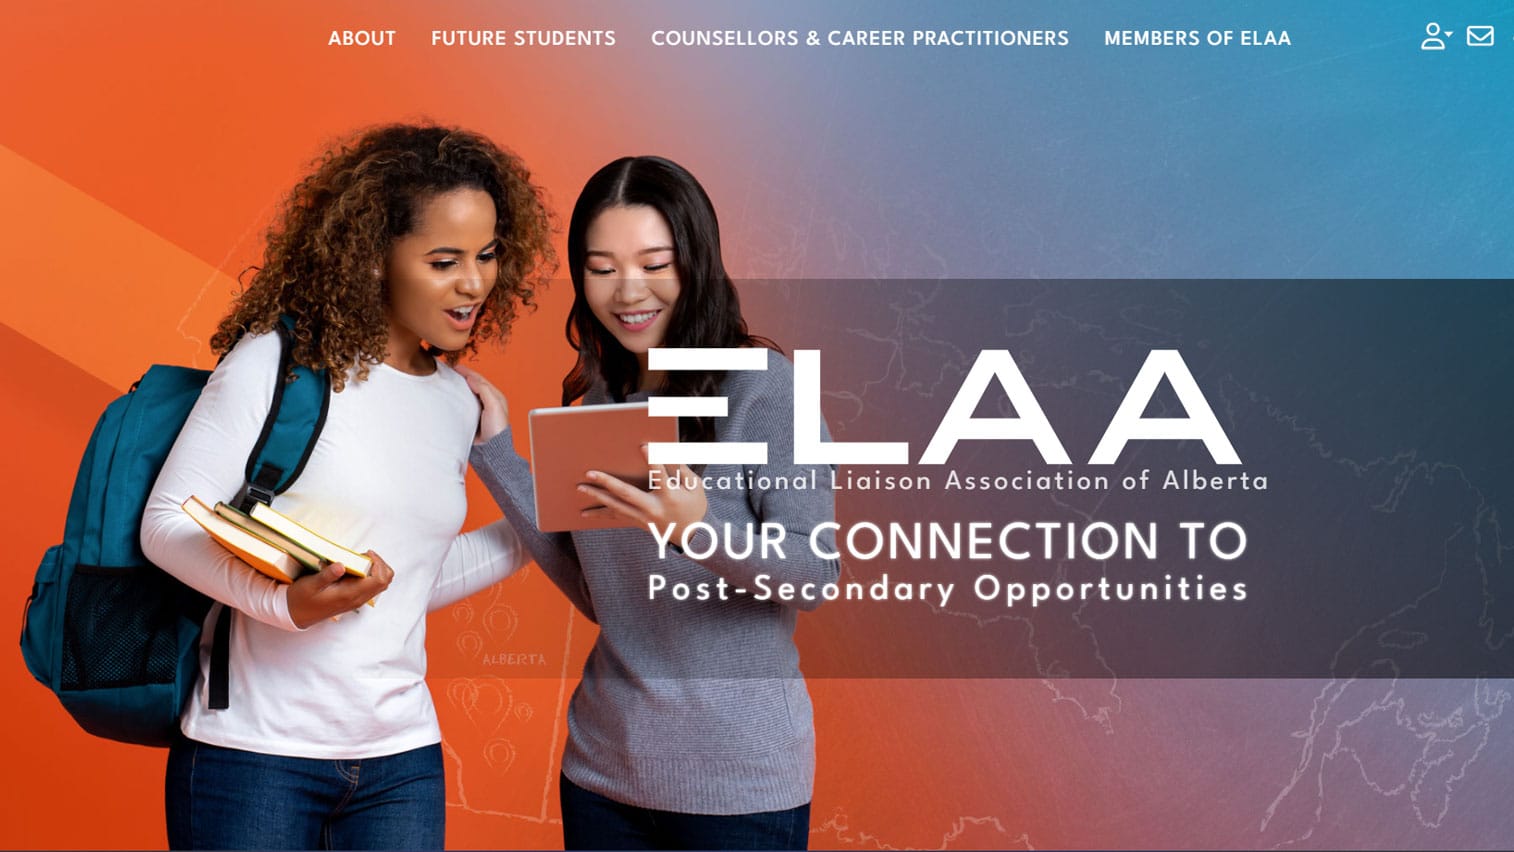 elaa website design project